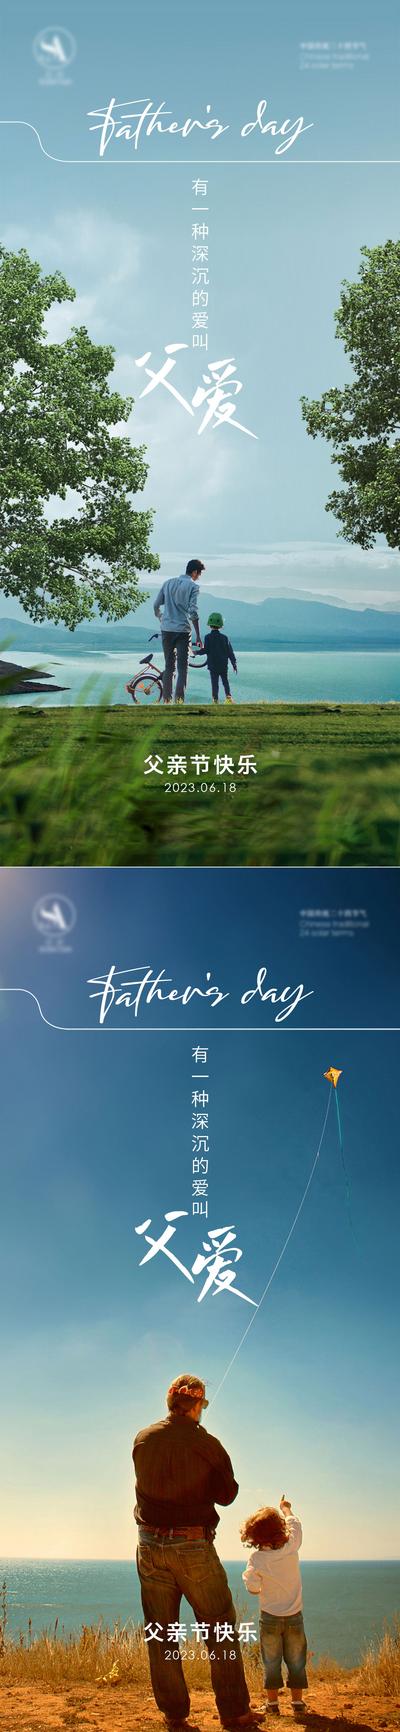 南门网 海报 房地产 公历节日 父亲节 放风筝 系列